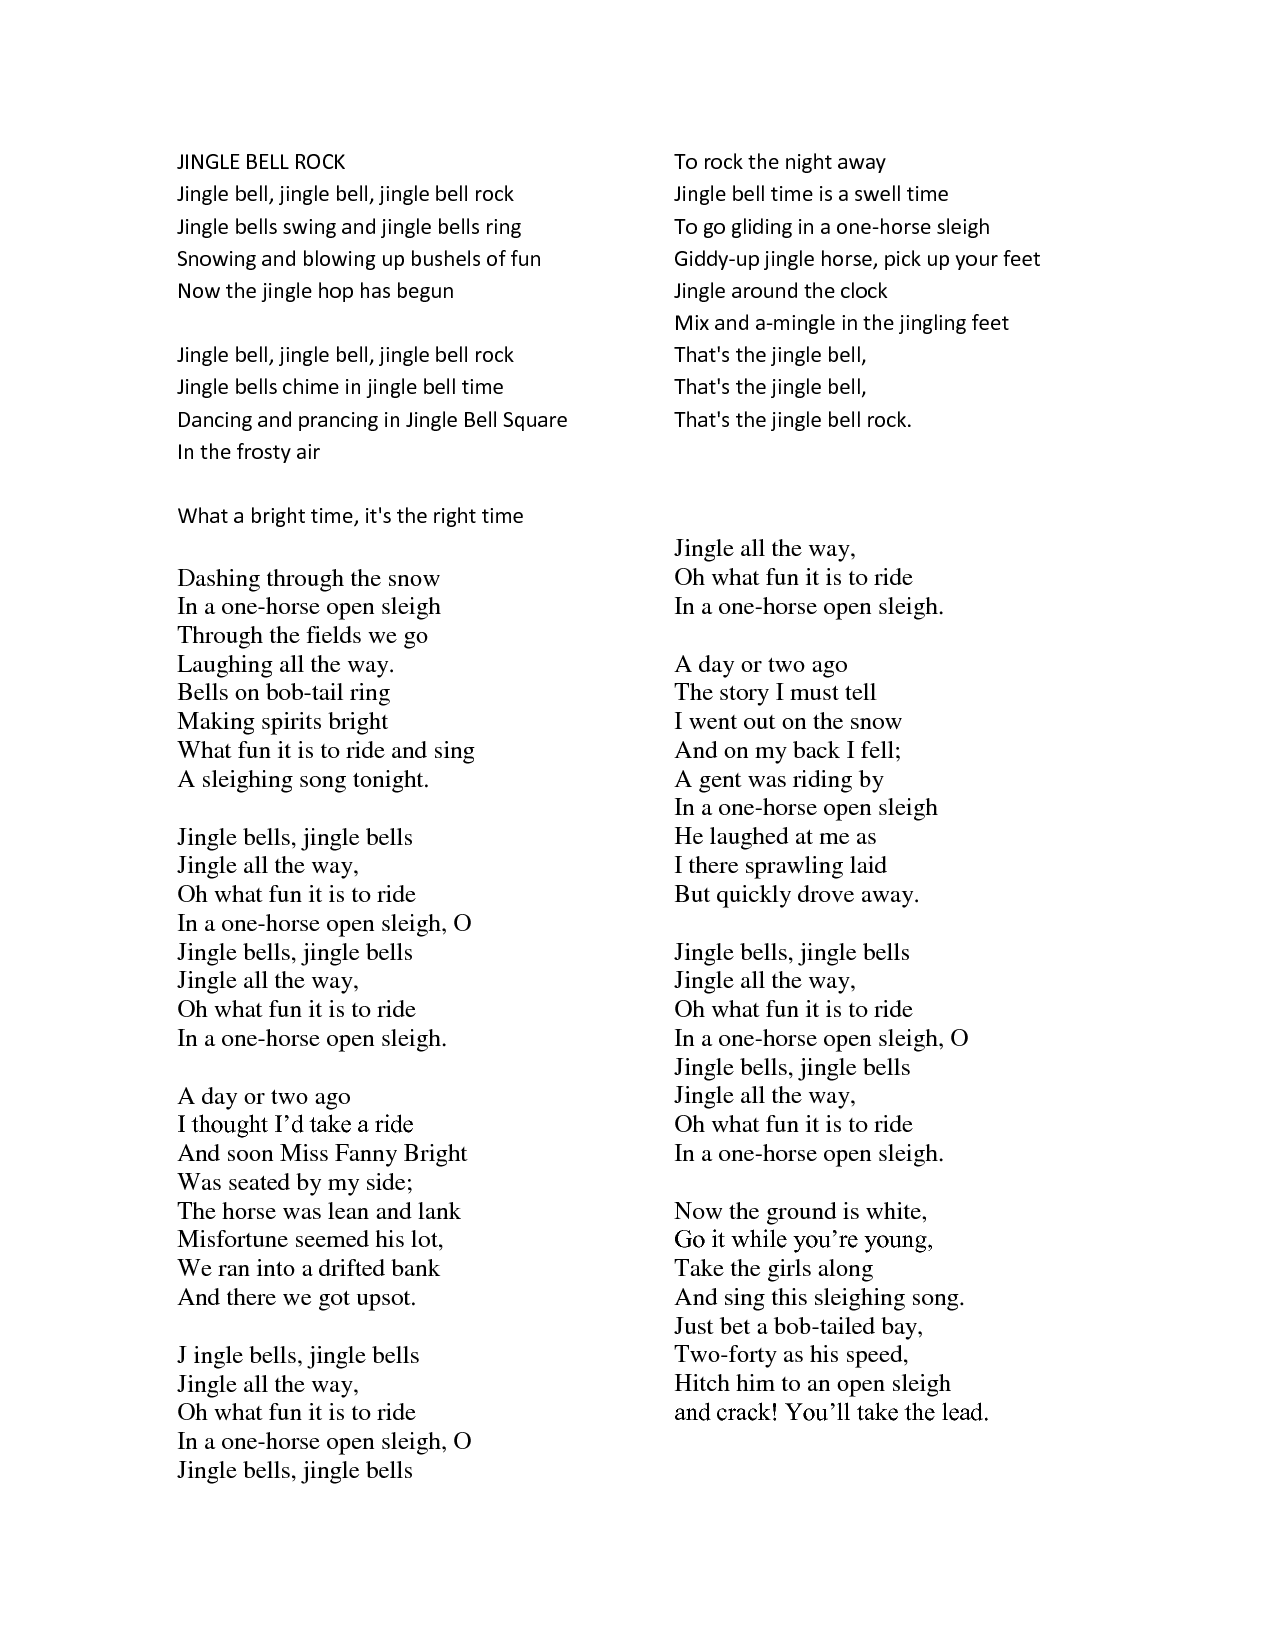 Lyrics For Jingle Bell Rock Printable